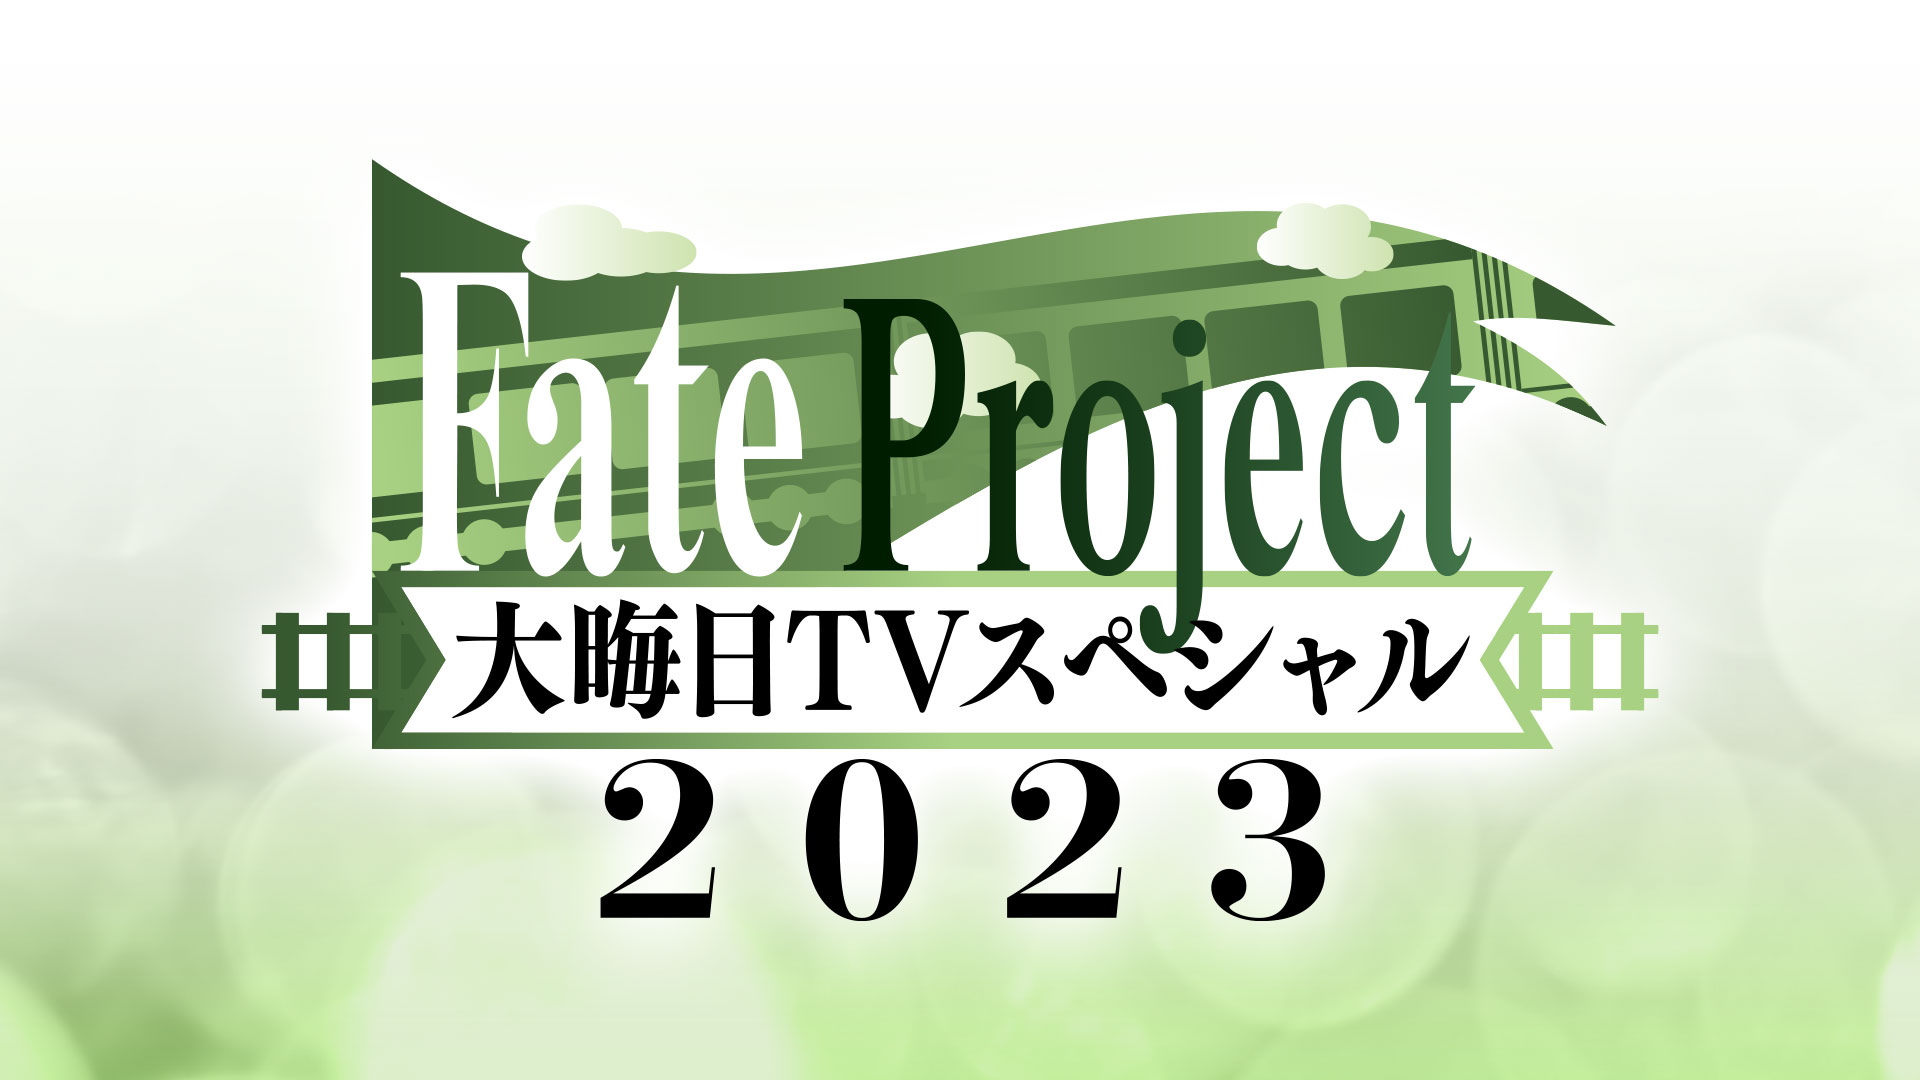 Fate Project 大晦日TVスペシャル 2023